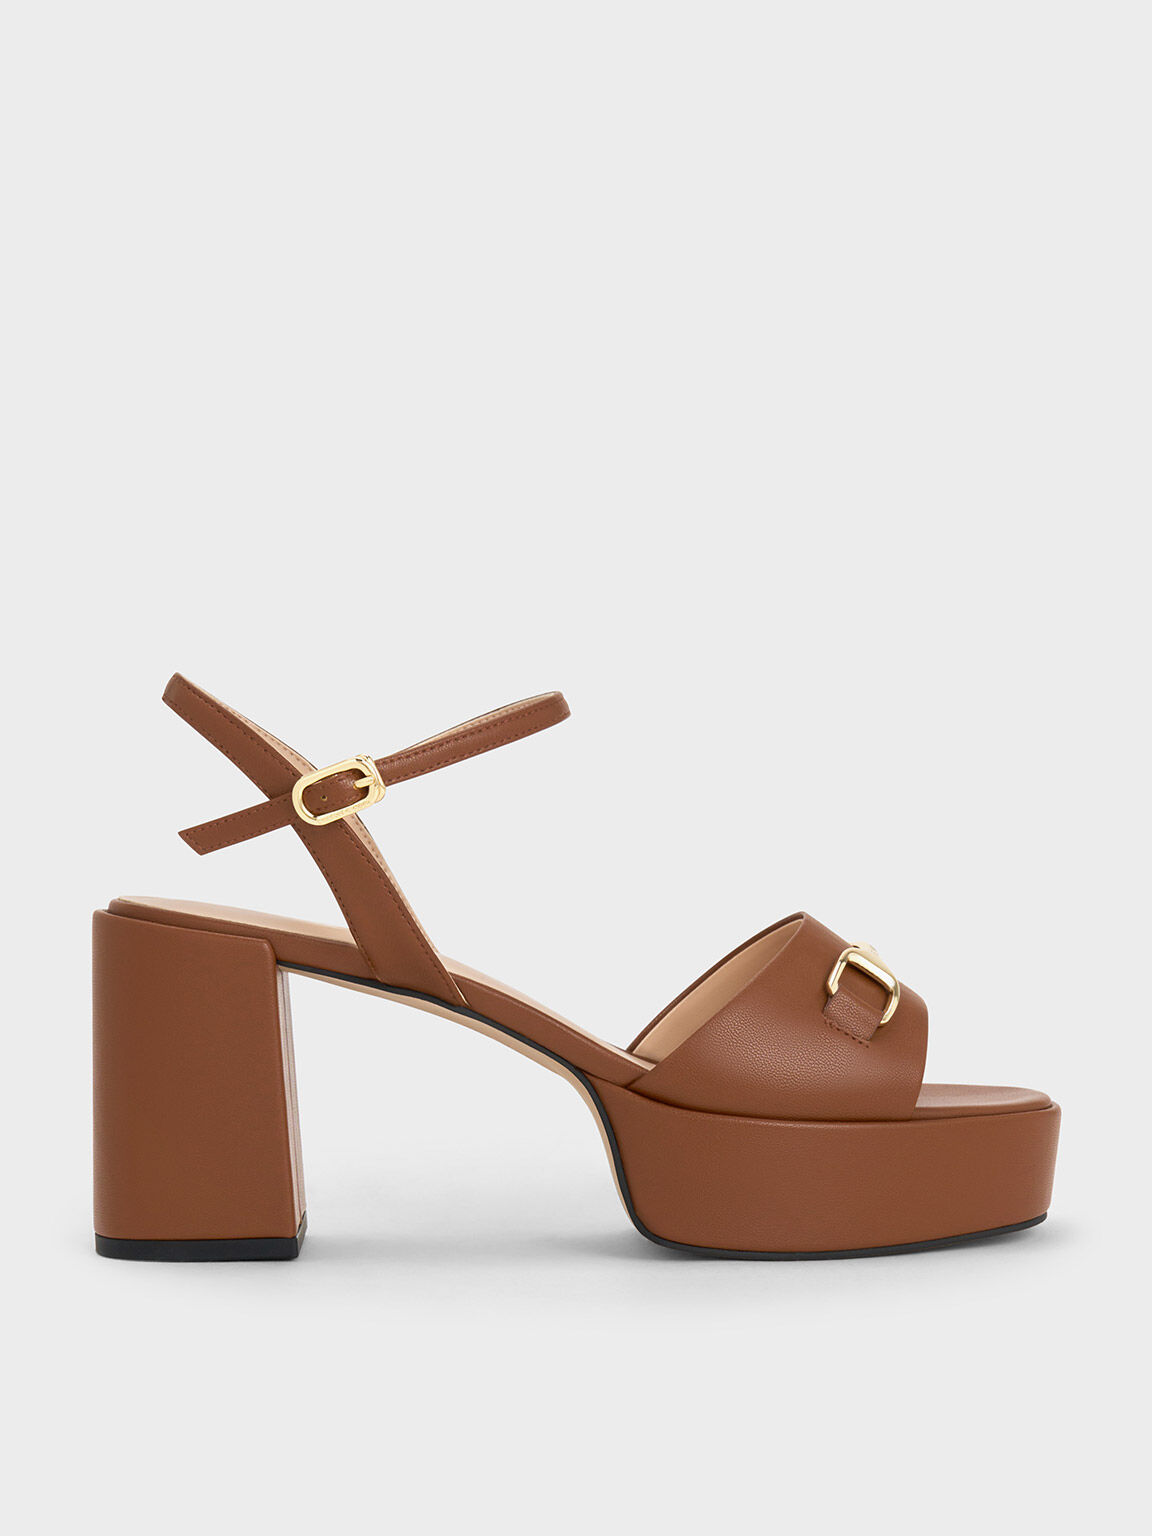 Bed Stu Kenya Platform Block Heel Sandals Size 9.5 Brown Leather Clog Style  Boho | eBay